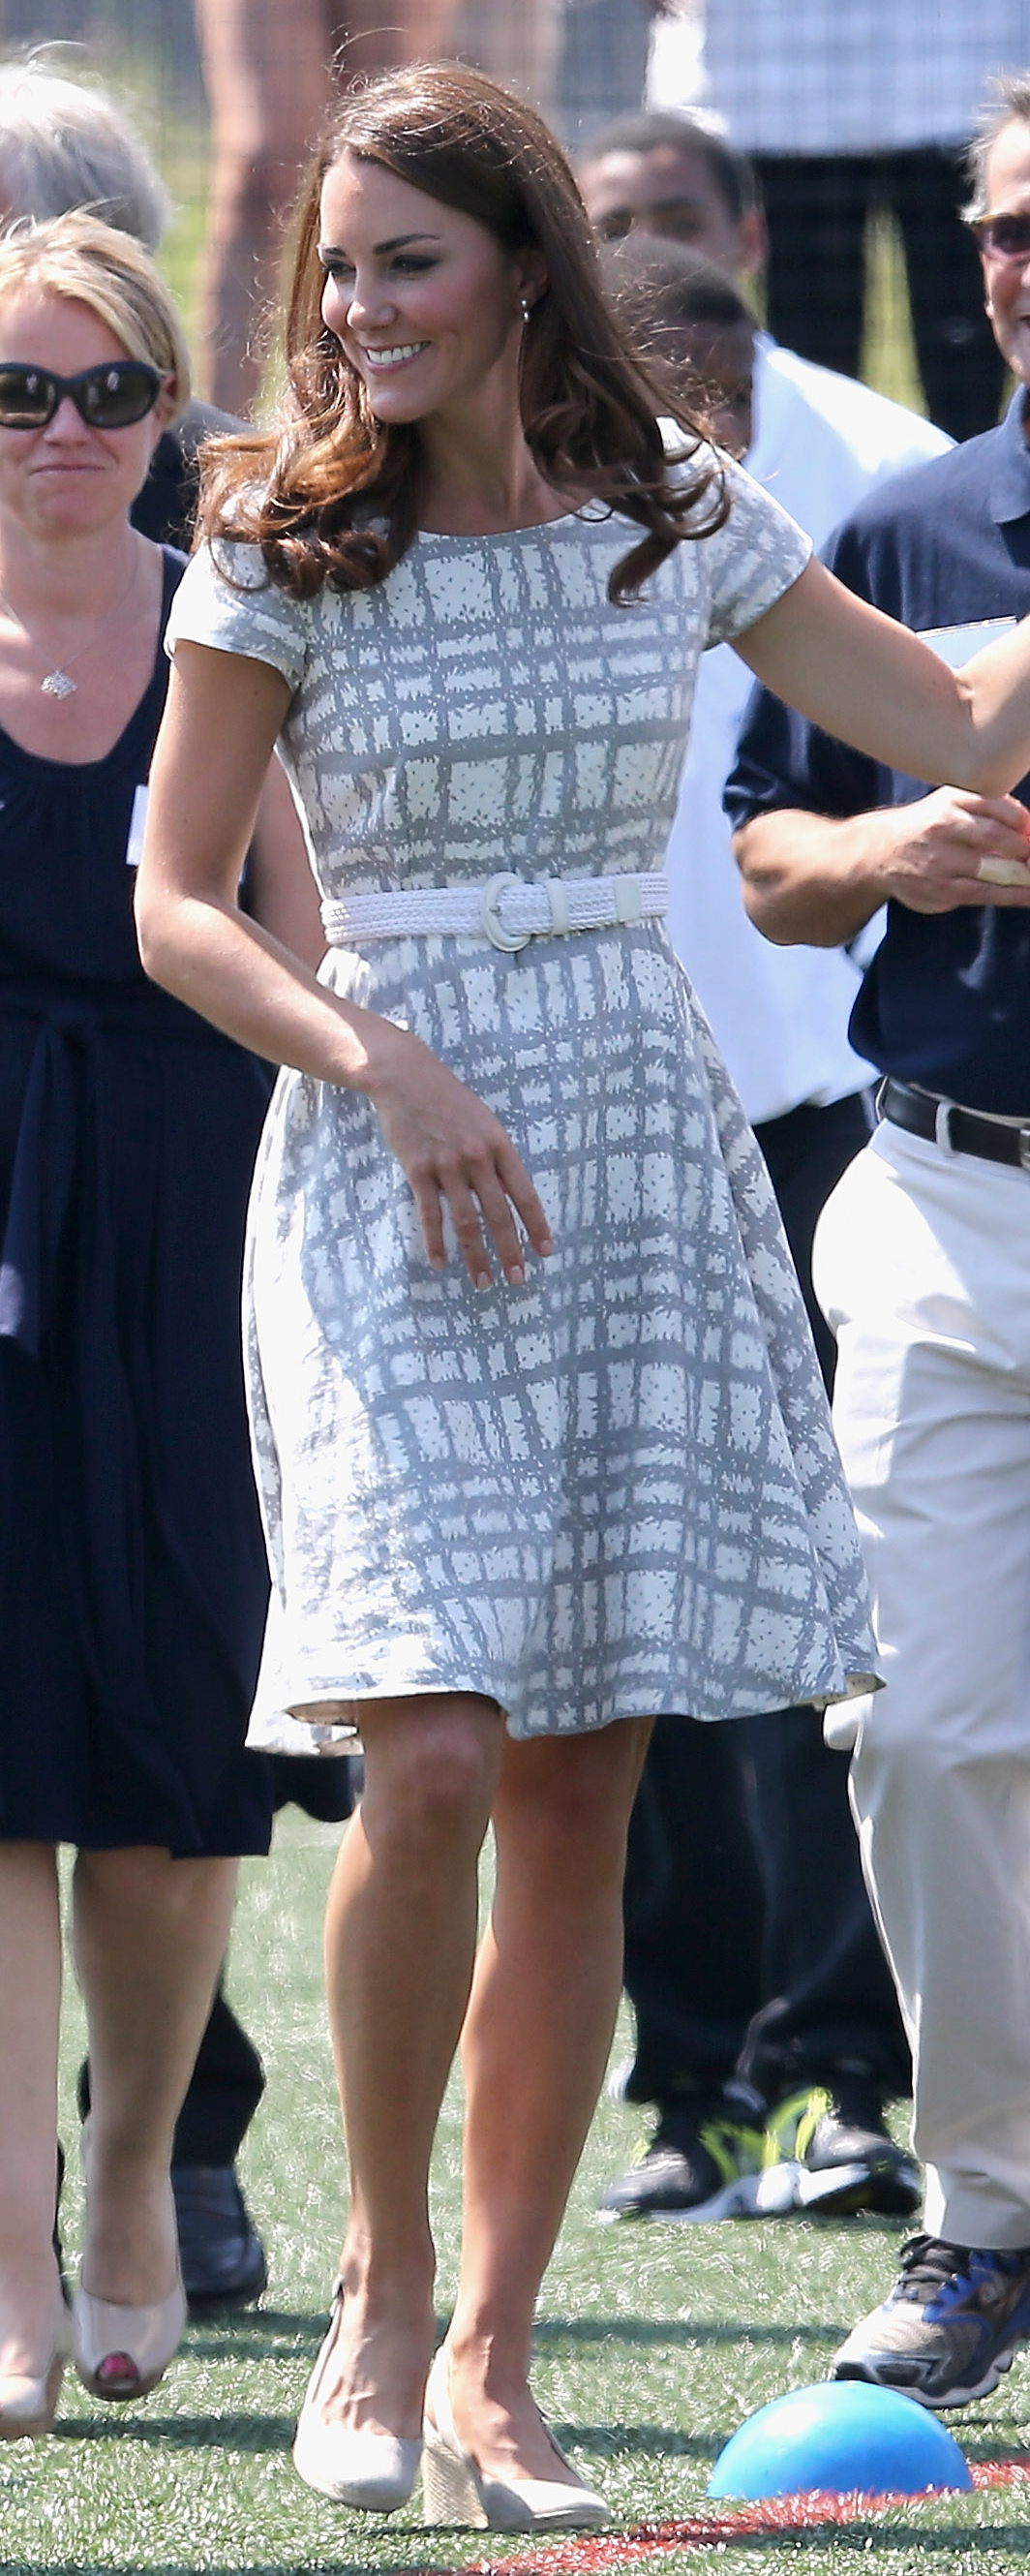 Hobbs Neston White Braided Rope Belt as seen on Kate Middleton, the Duchess of Cambridge.